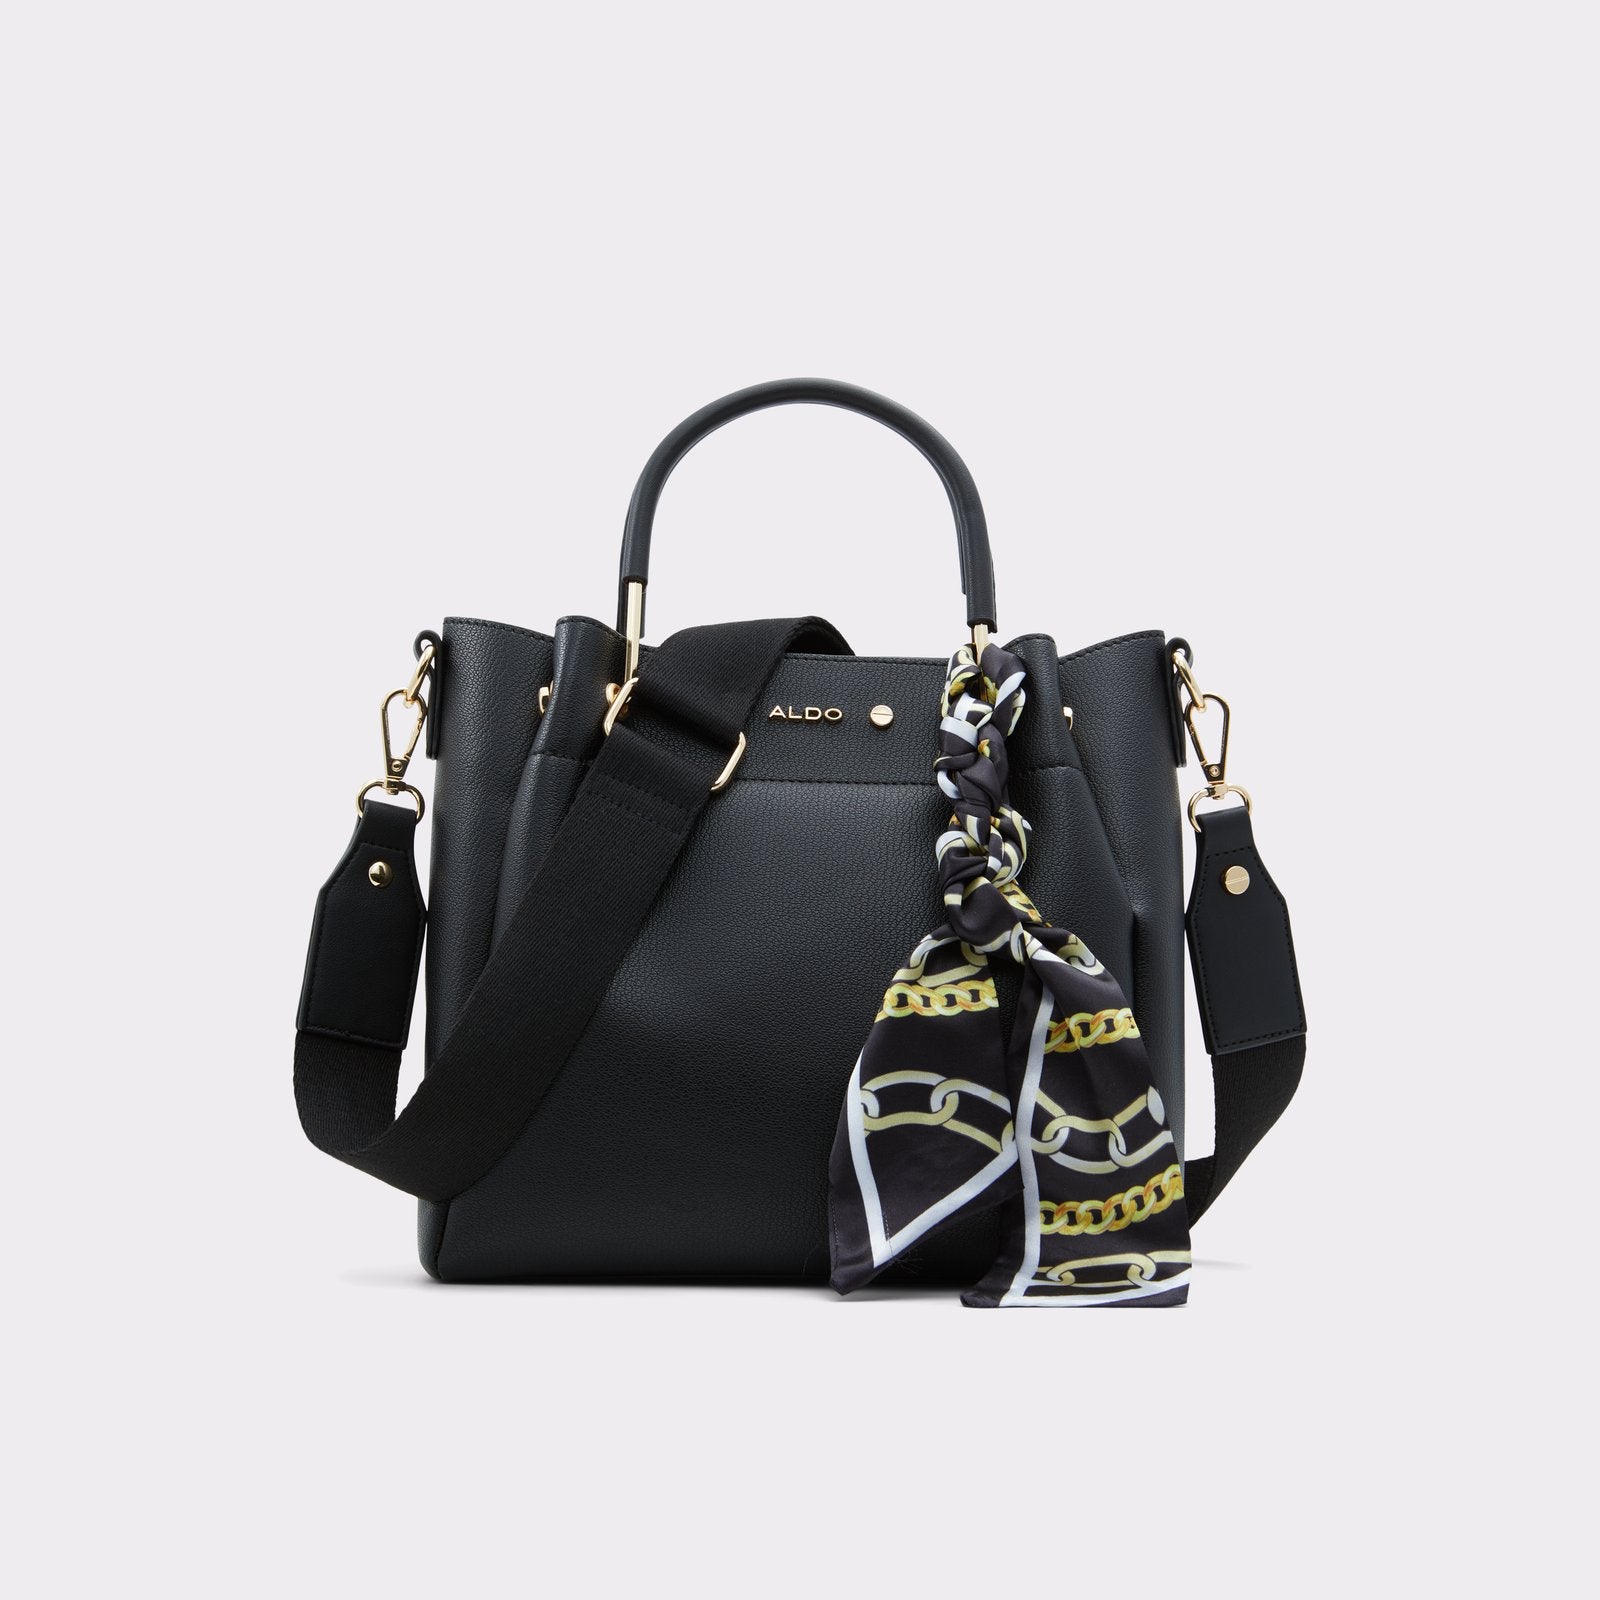 ALDO Papioni | Handbag, Bags handbags, Handbags